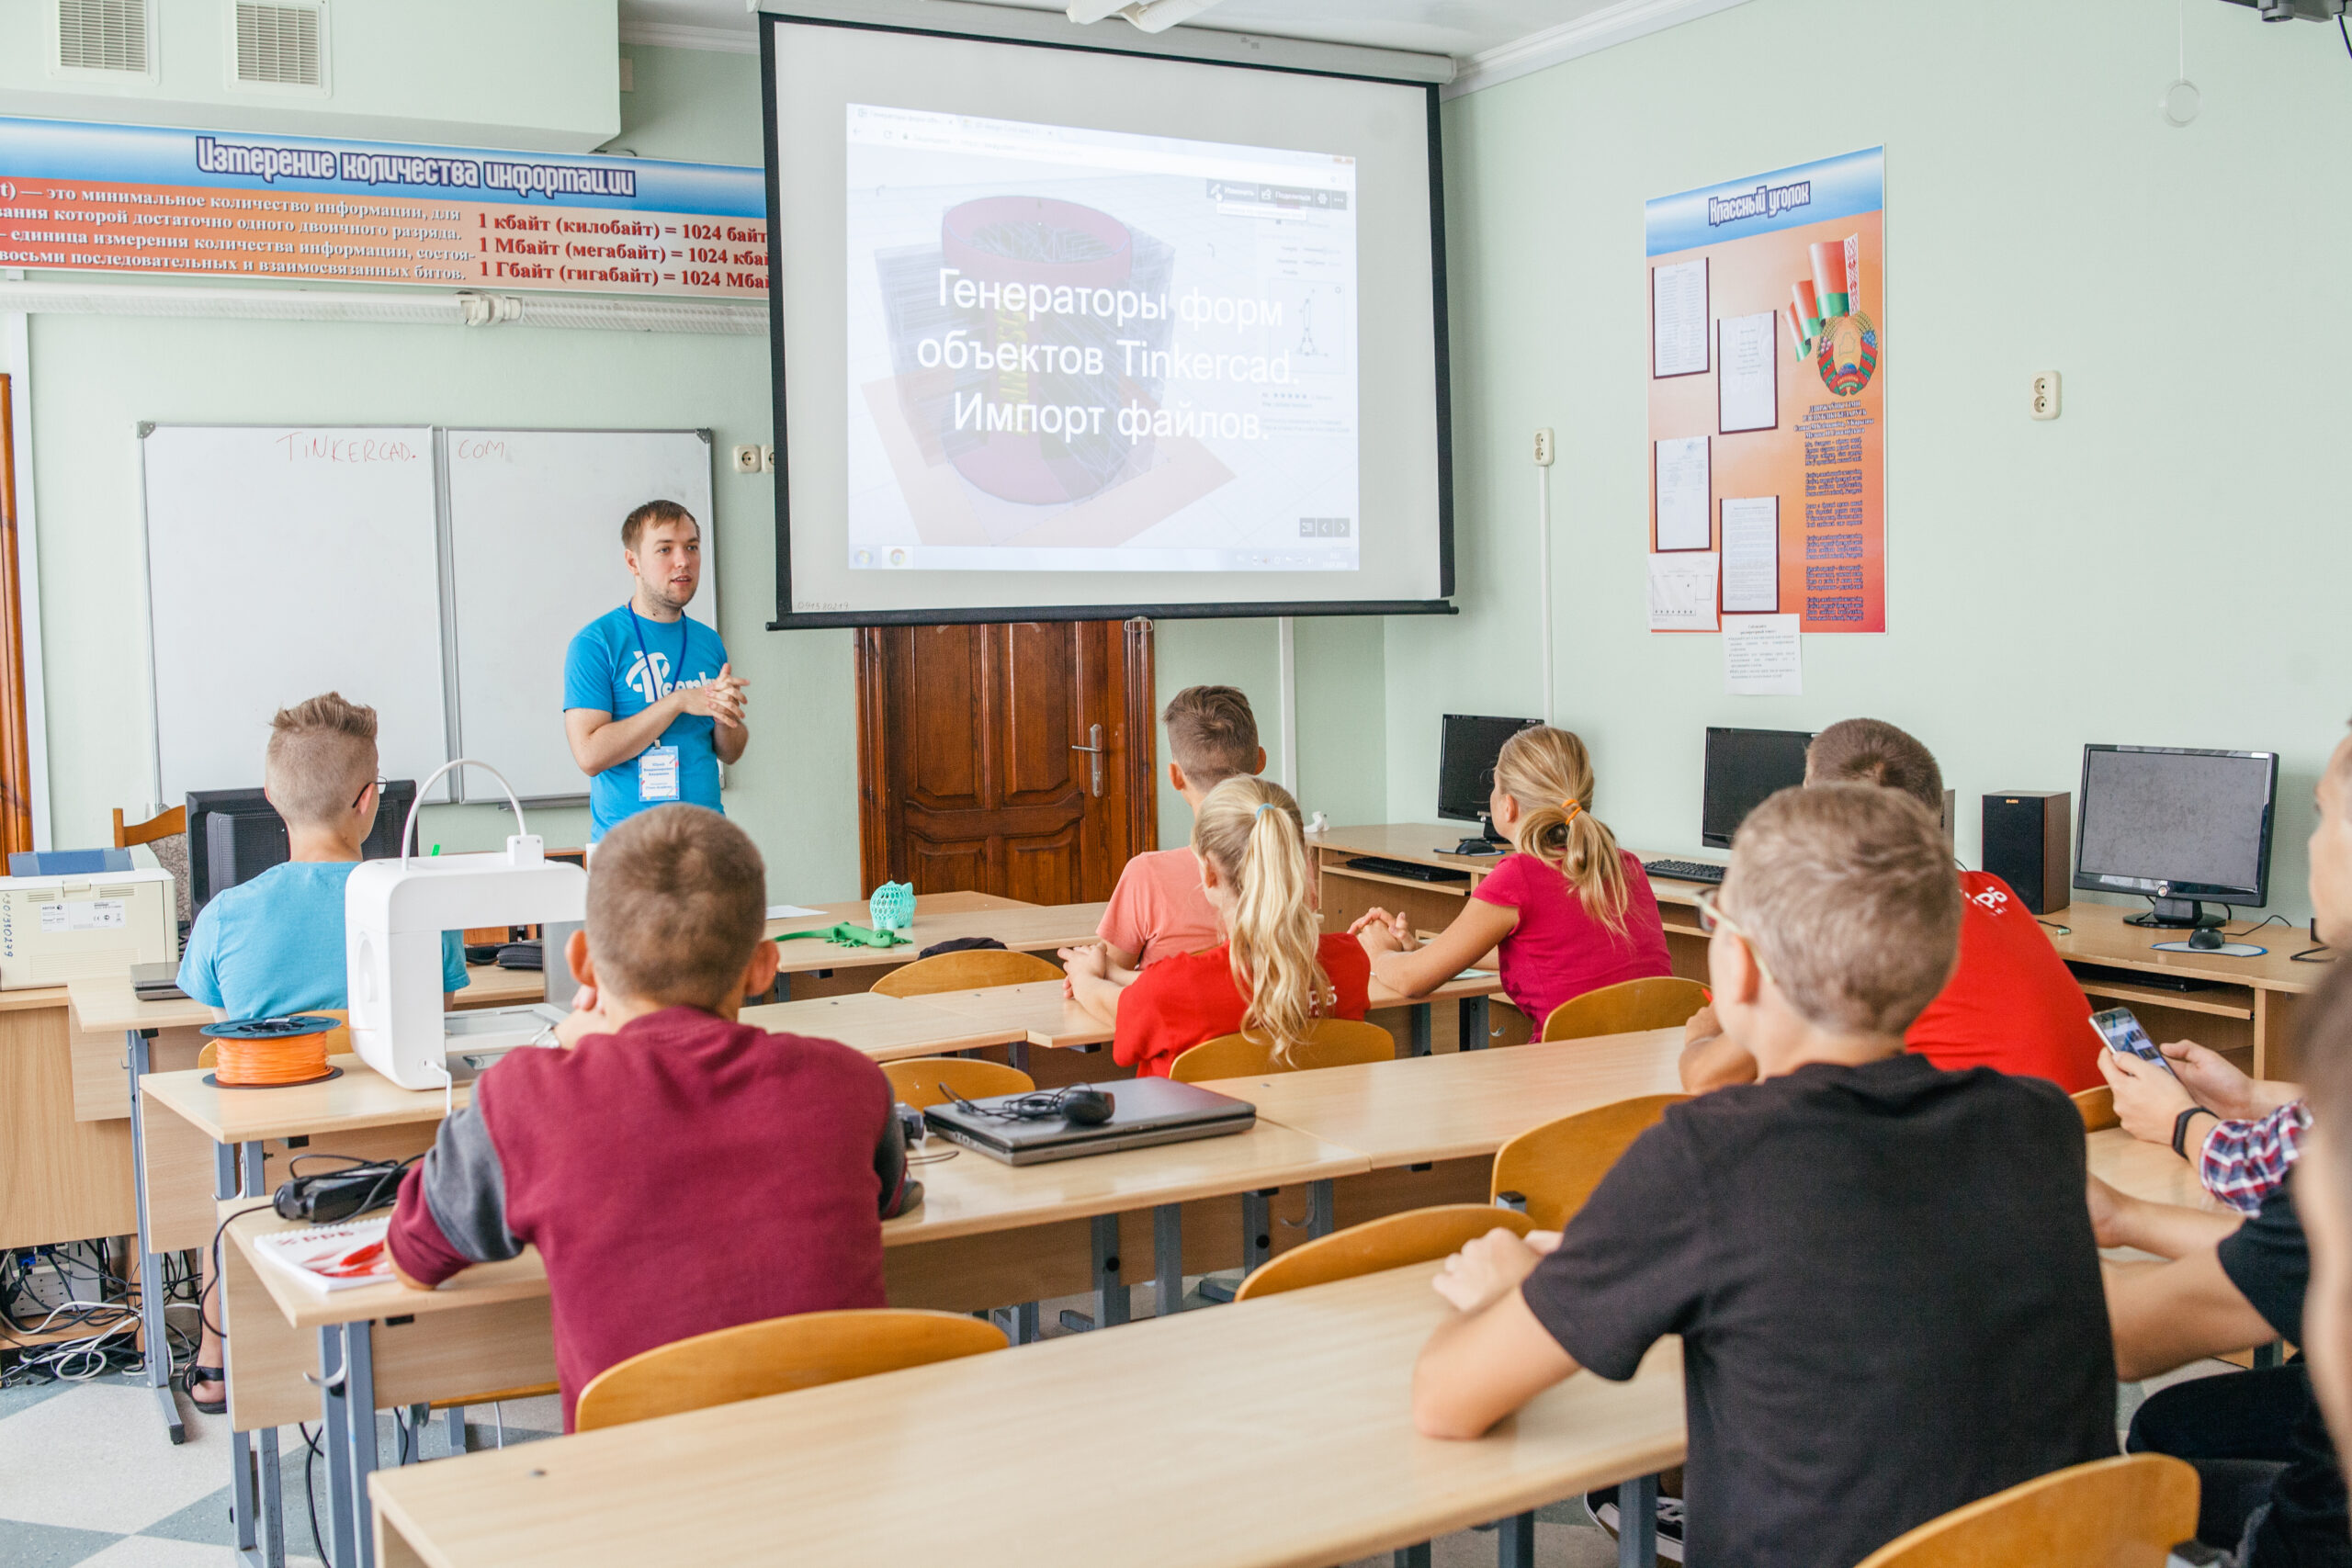 Как белорусский социальный стартап YOU CAN помогает подросткам выбрать профессию, а бизнесу — найти будущих сотрудников